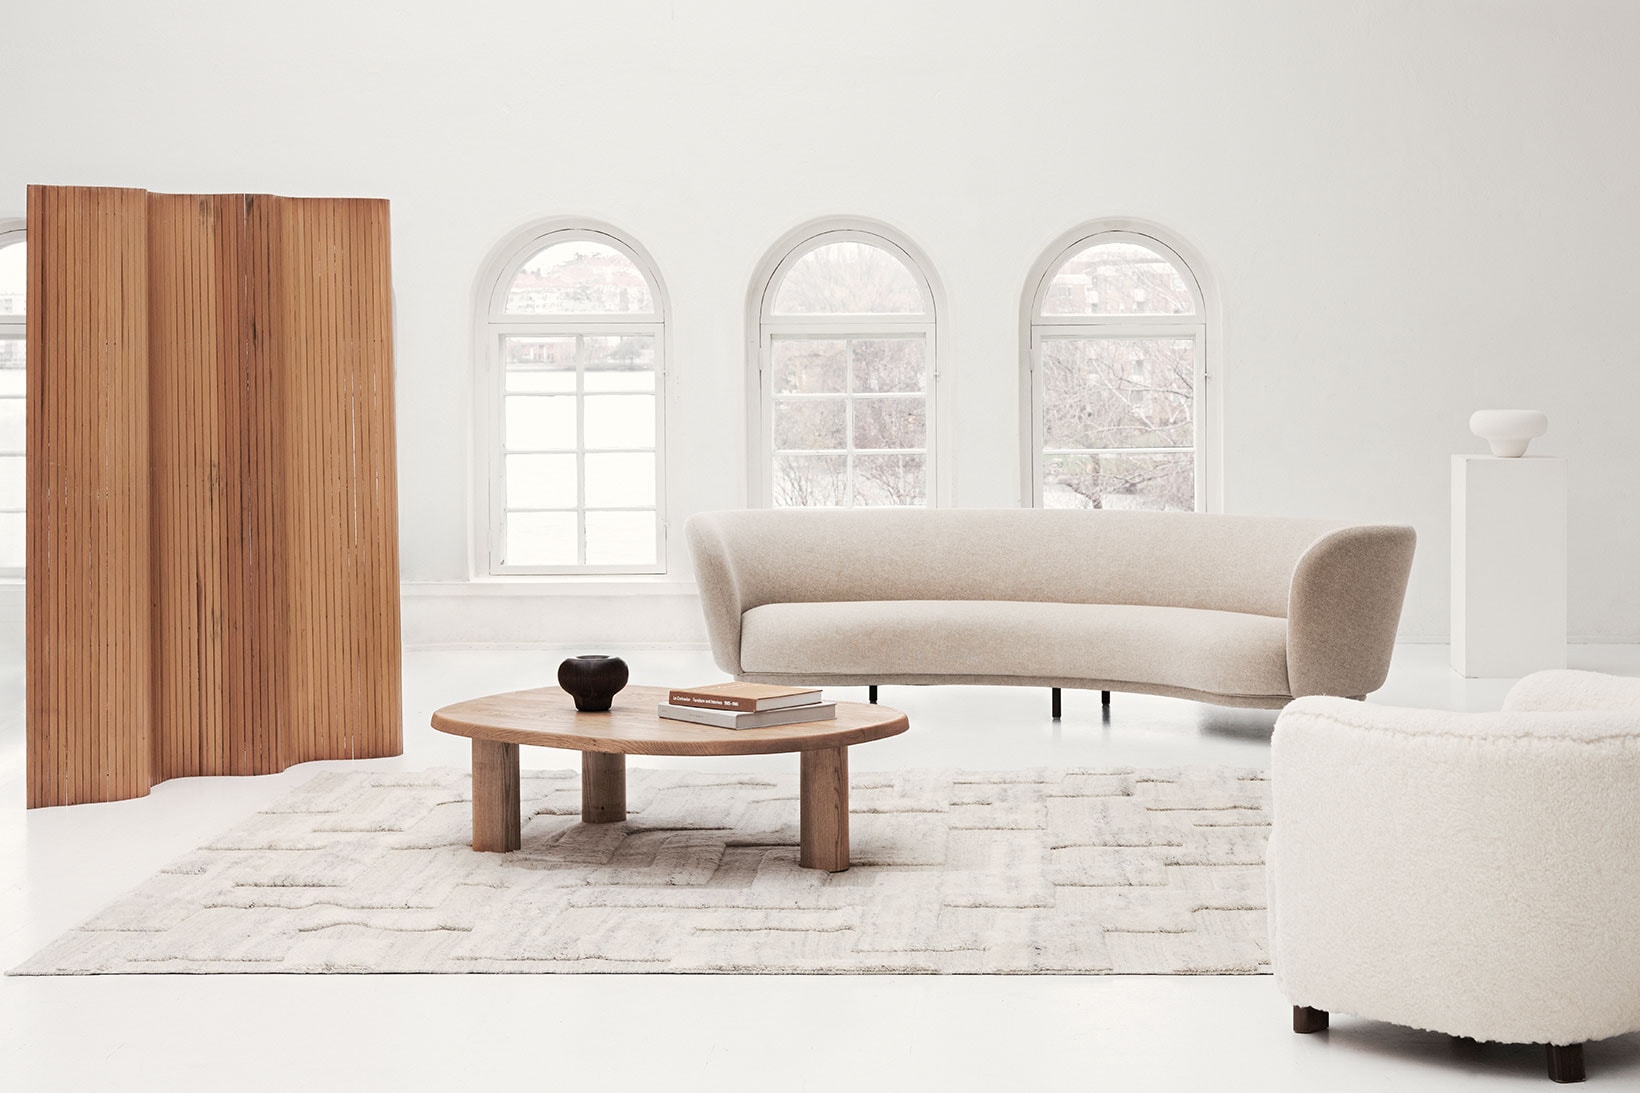 nordic knots home decor interior design rugs boho cream mix sofa couch